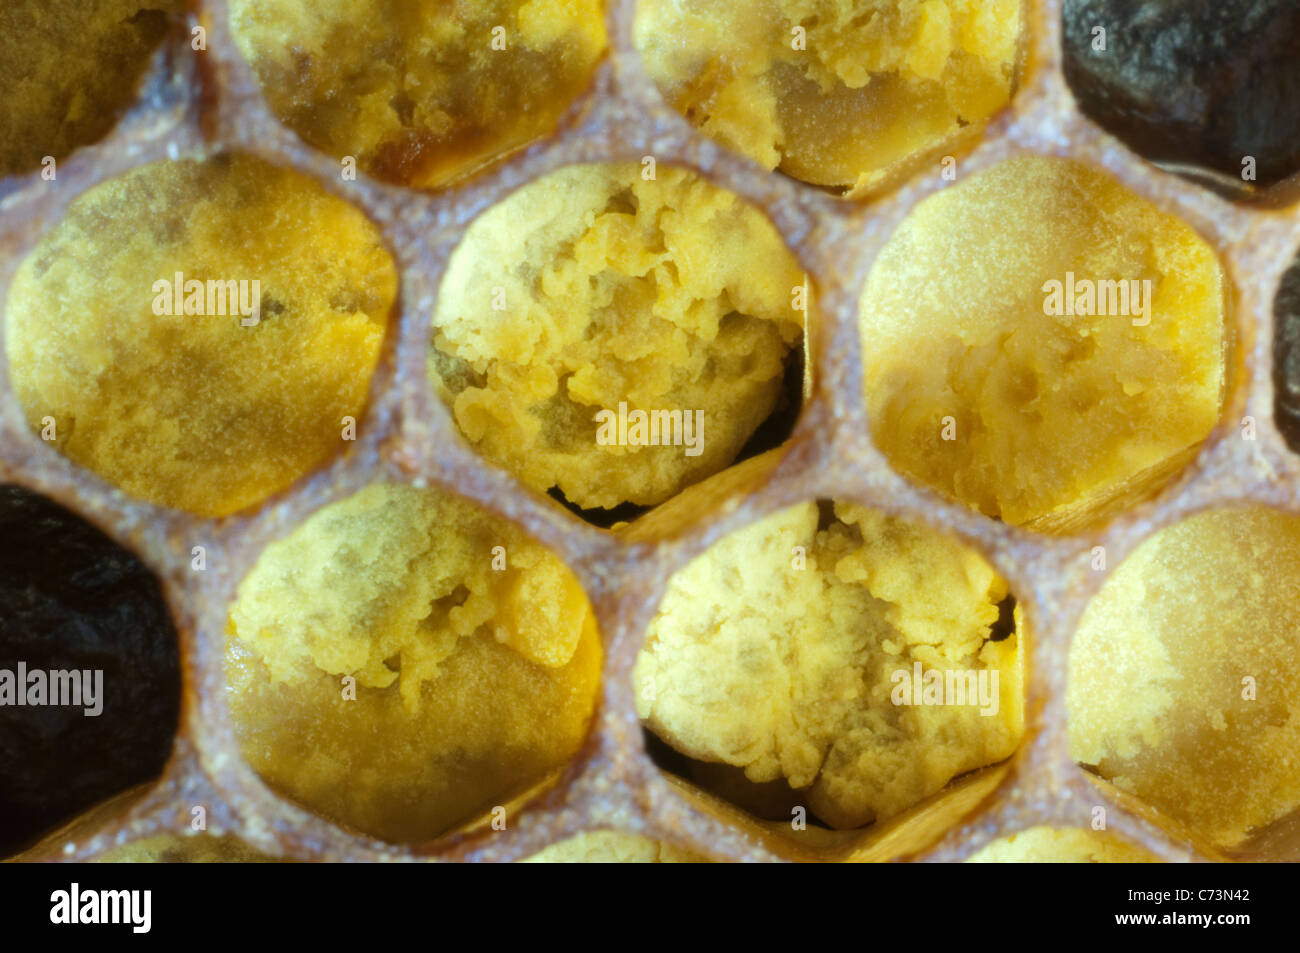 L'abeille européenne, l'abeille à miel (Apis mellifera, Apis mellifica). Close-up de cellules remplies de pollen. Banque D'Images